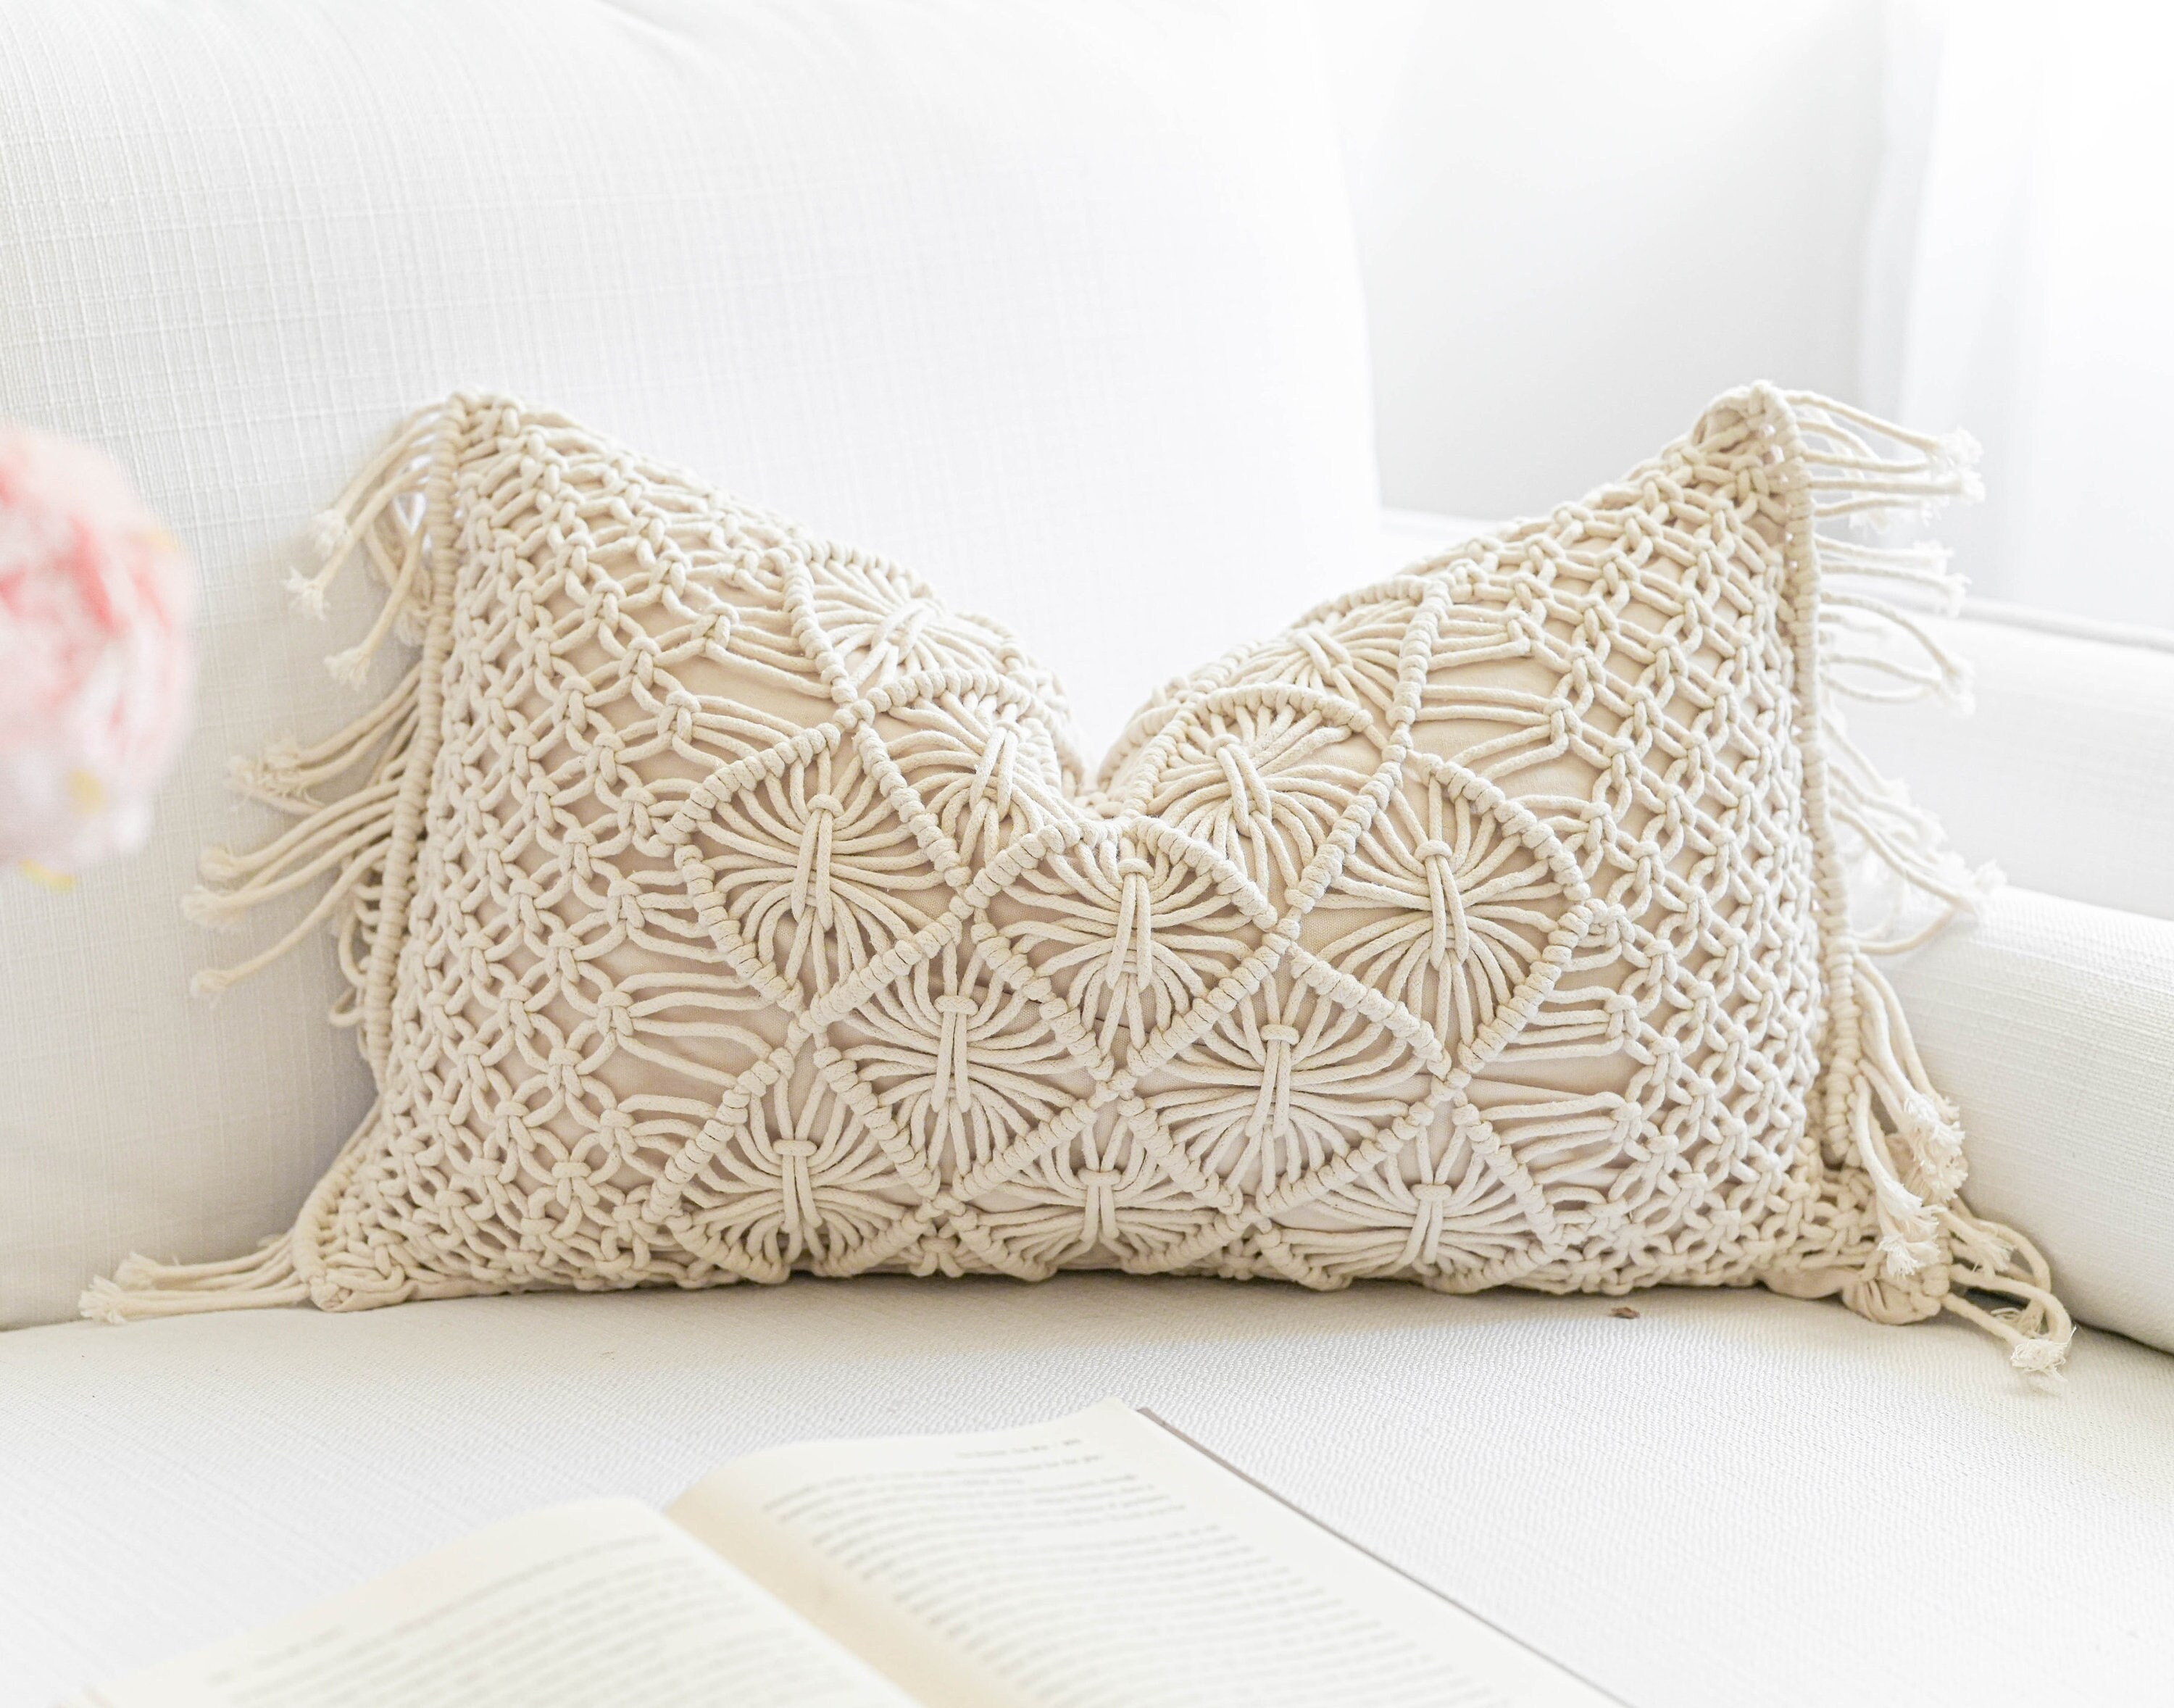 BlissBlush Gray Boho Lumbar Throw Pillow Cover 14x36, Grey Accent Long Body  Lumbar Pillow for Bed, Decorative Modern Bohemian Woven Textured Lumbar